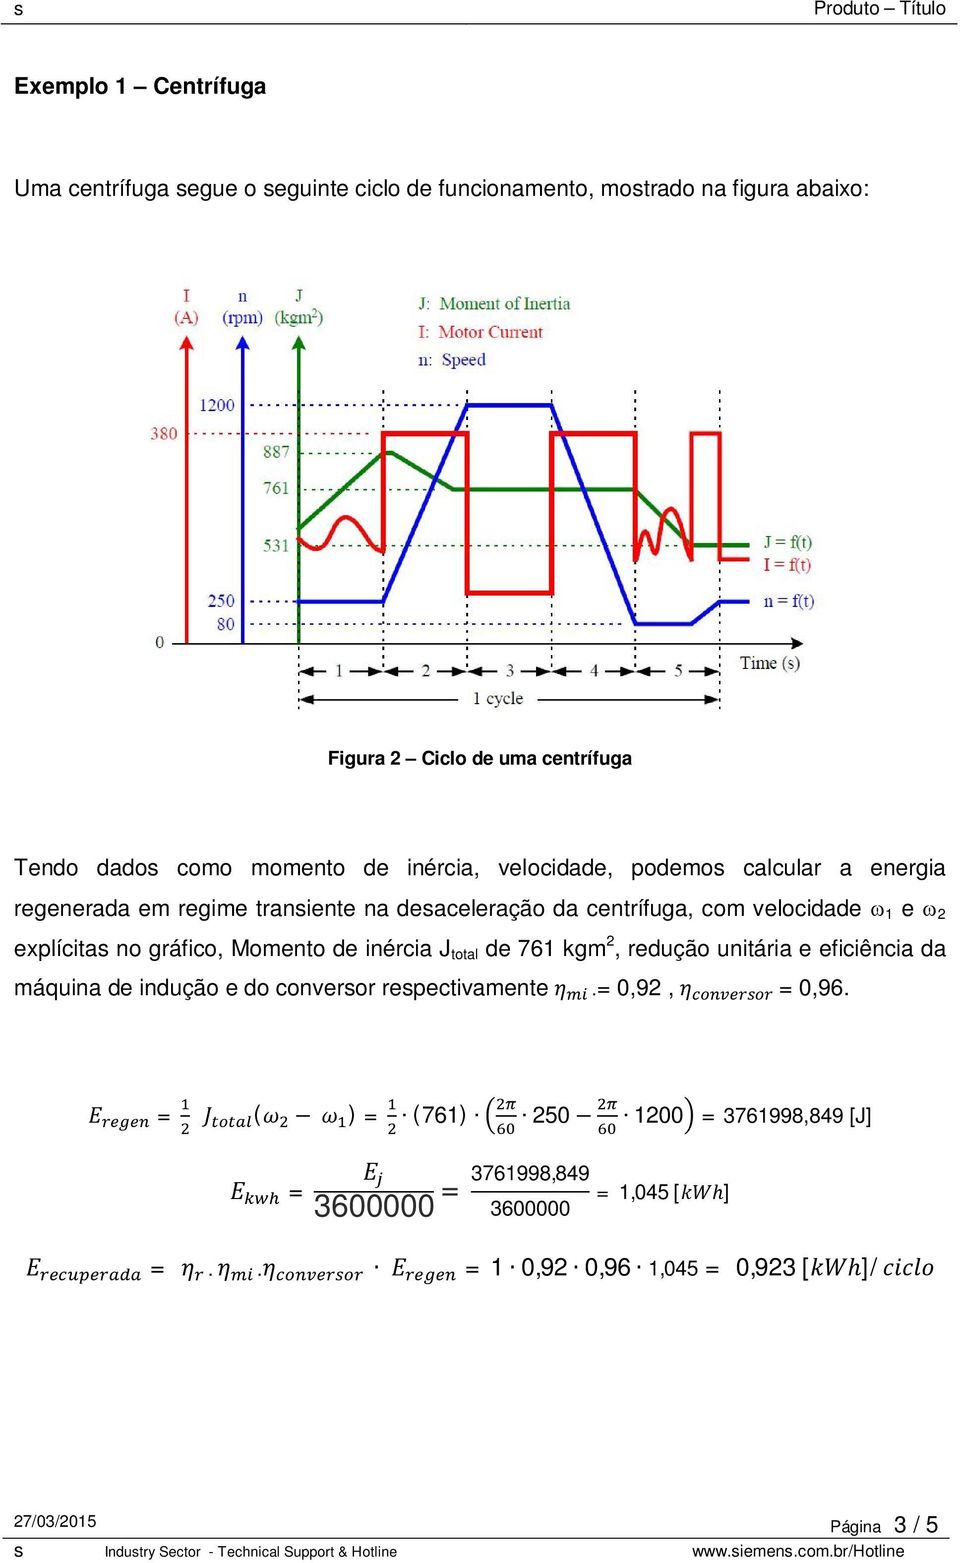 explícitas no gráfico, Momento de inércia J total de 761 kgm 2, redução unitária e eficiência da máquina de indução e do conversor respectivamente =